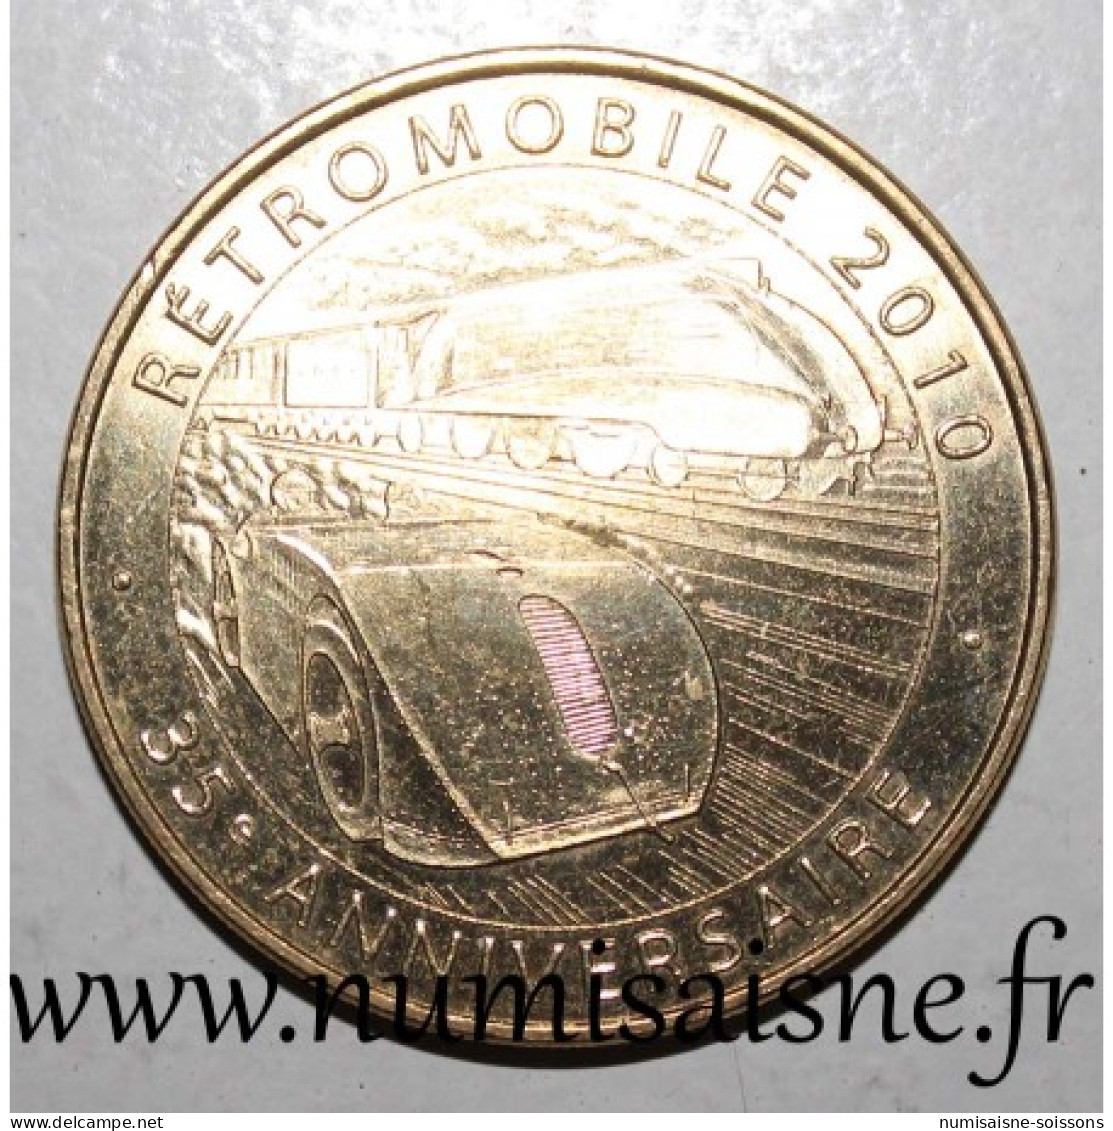 75 - PARIS - SALON RETRO MOBILE - Monnaie De Paris - 2010 - 2010